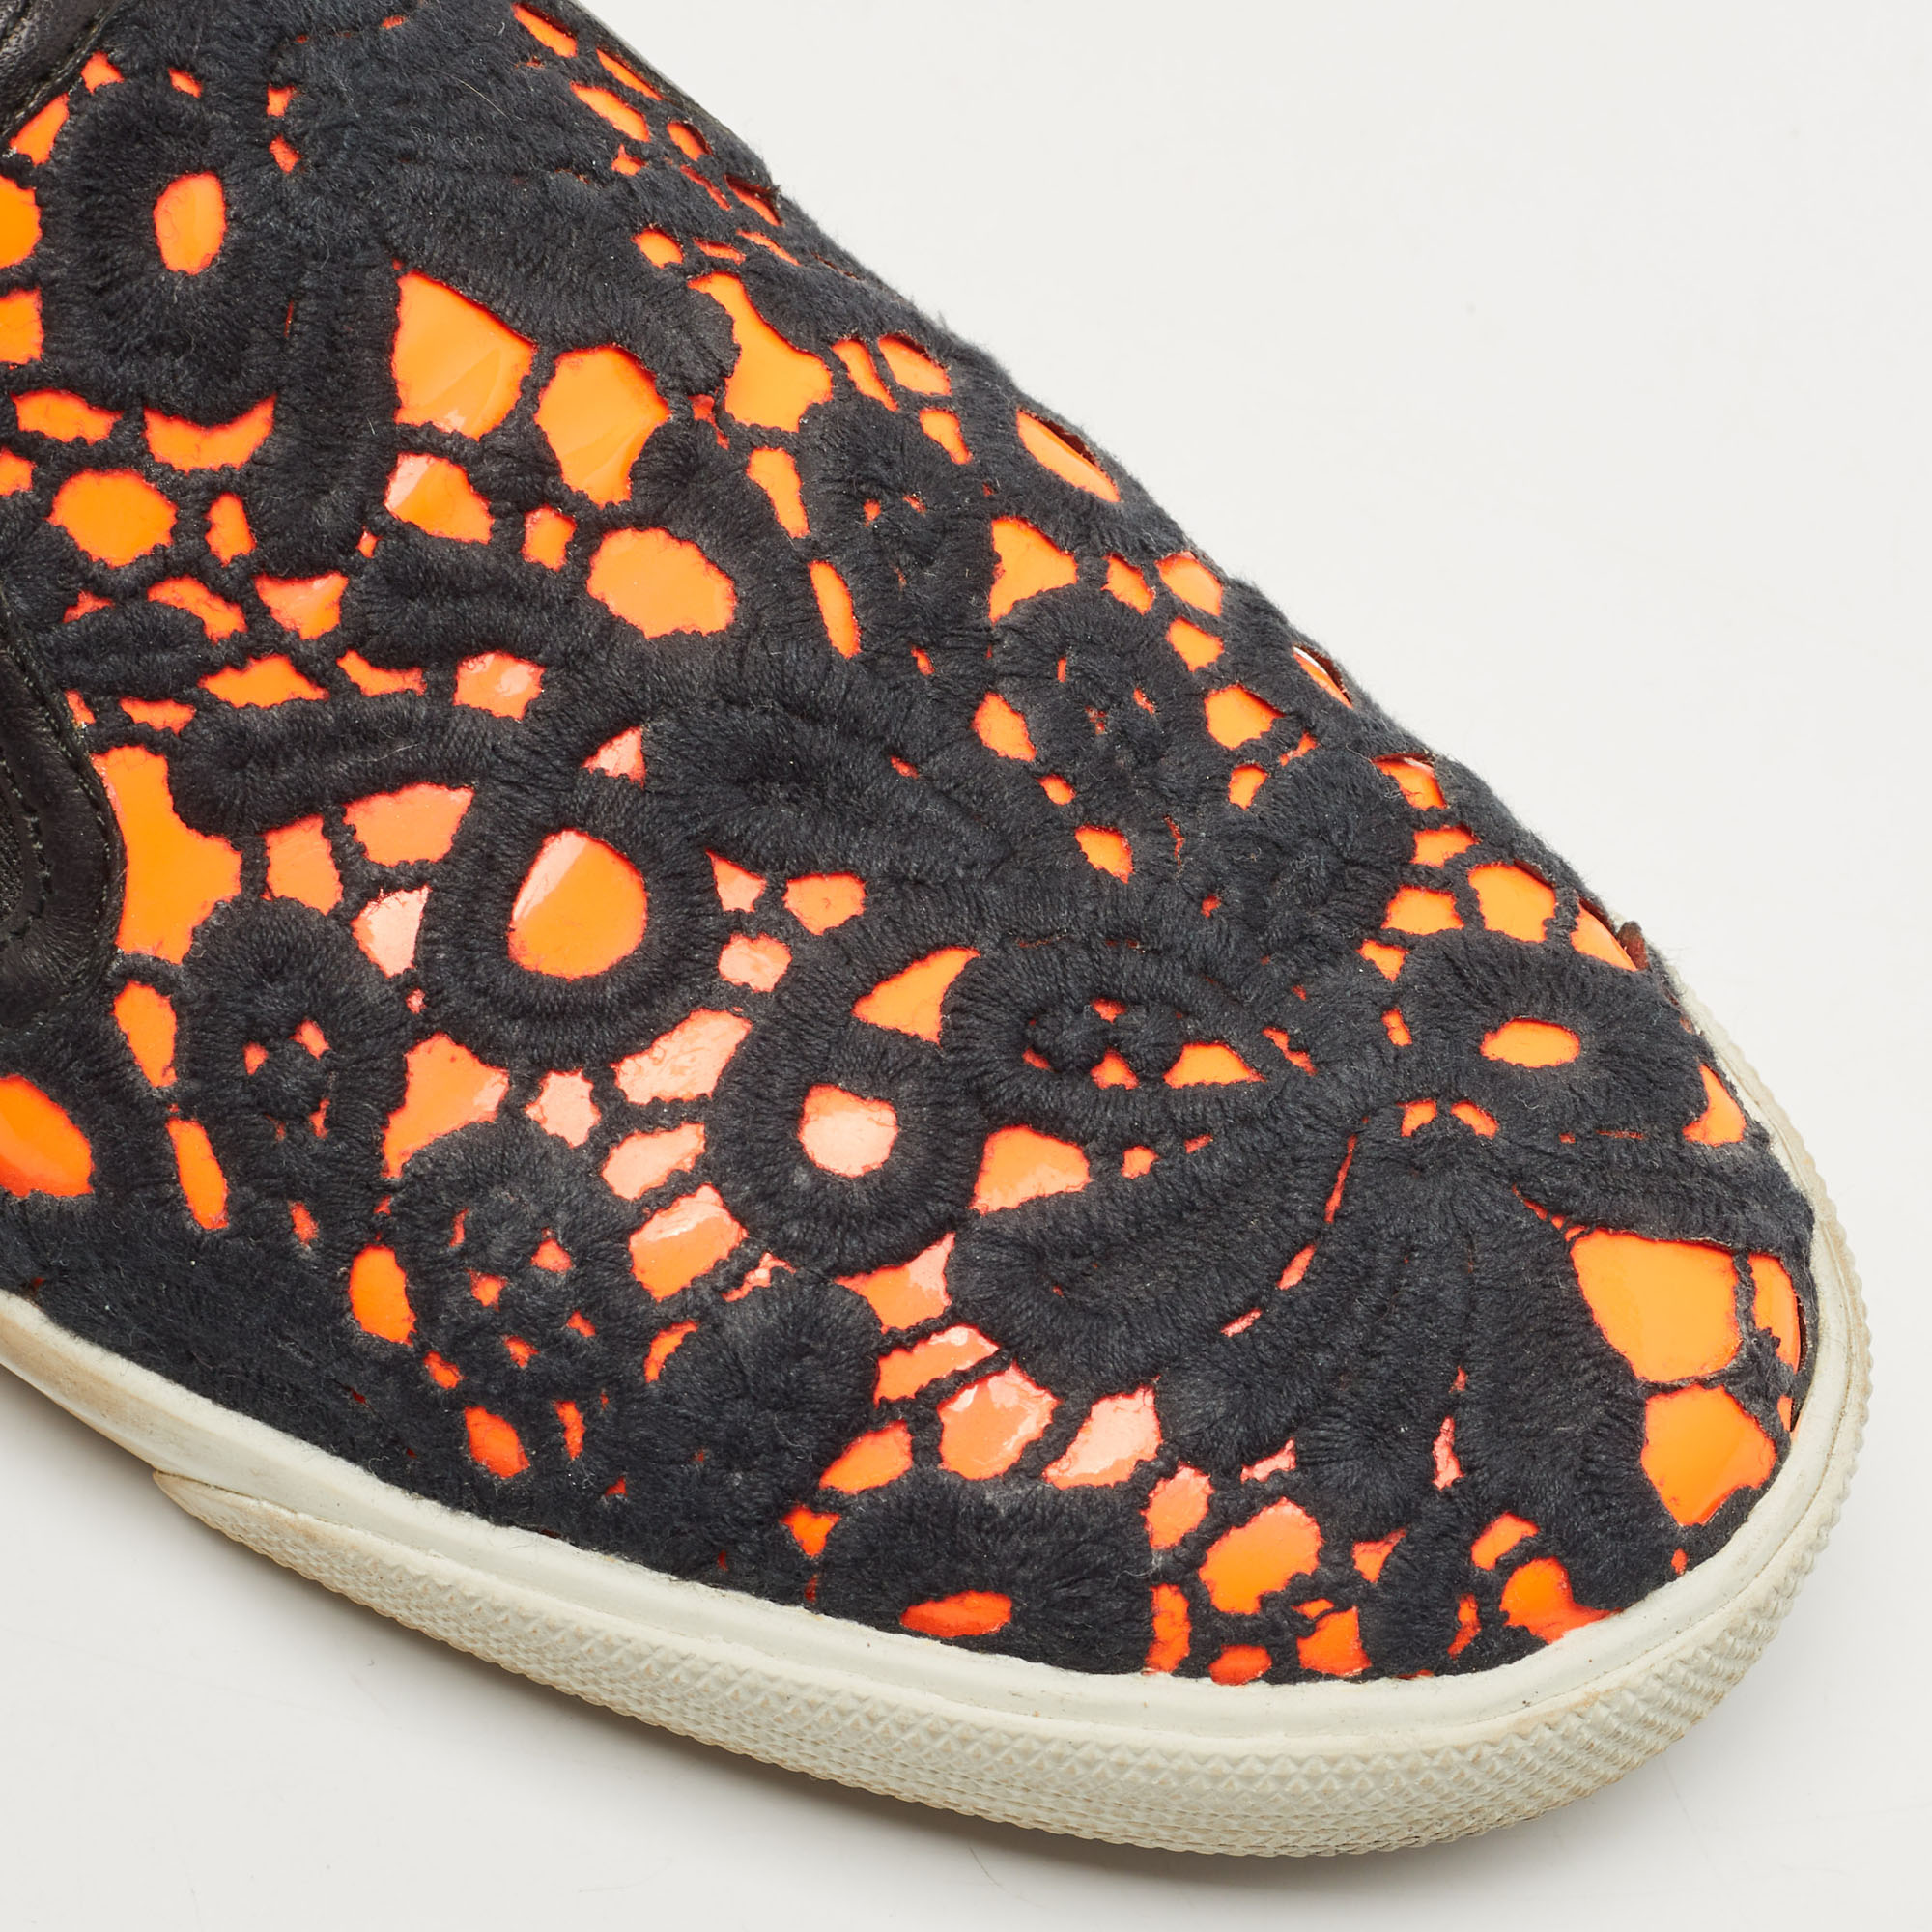 Jimmy Choo Black/Orange Lace Slip On Sneakers Size 39